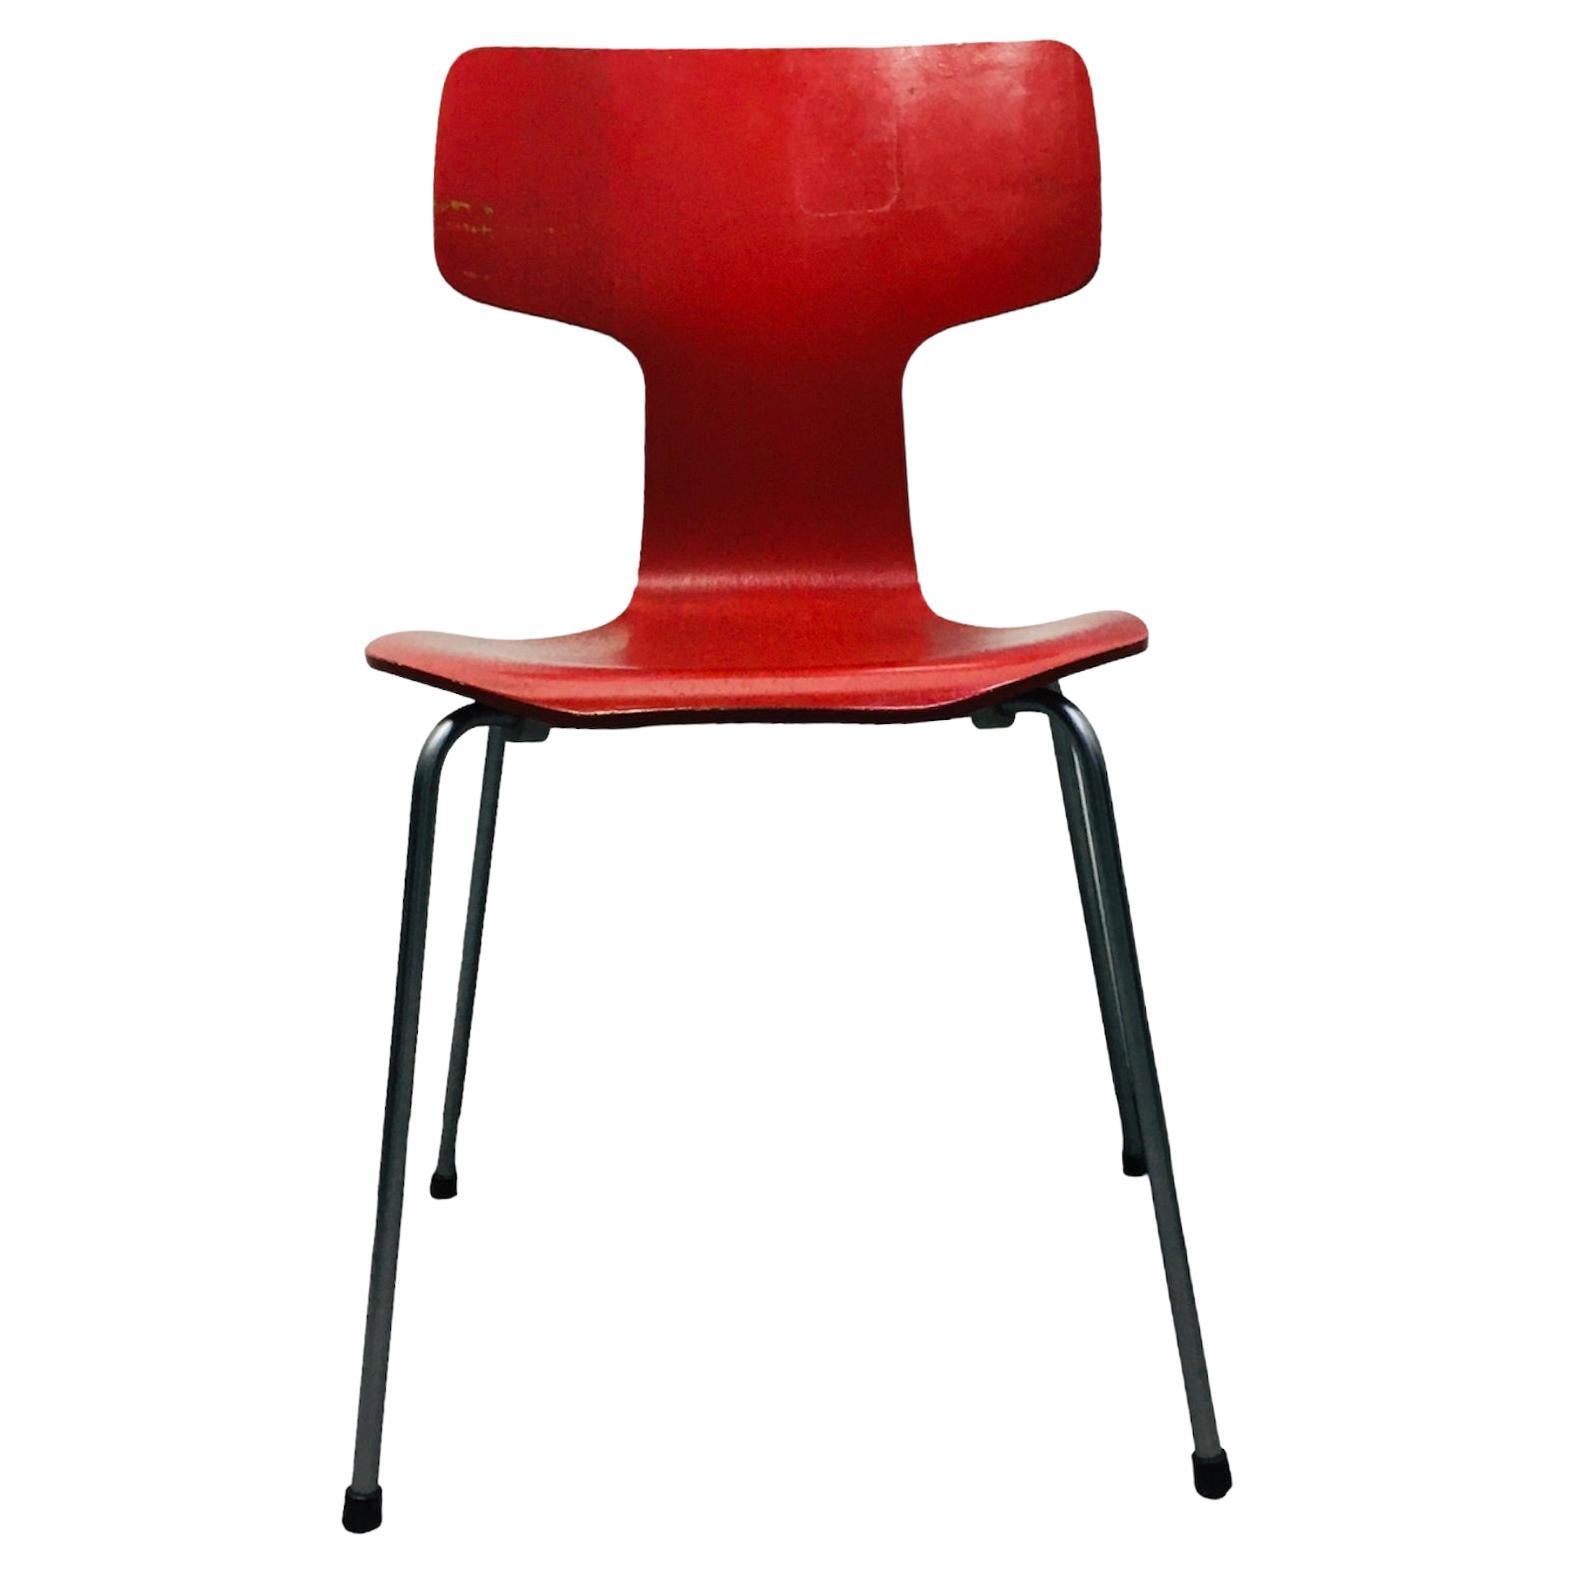 T-Chair, Designed by Arne Jacobsen for Fritz Hansen